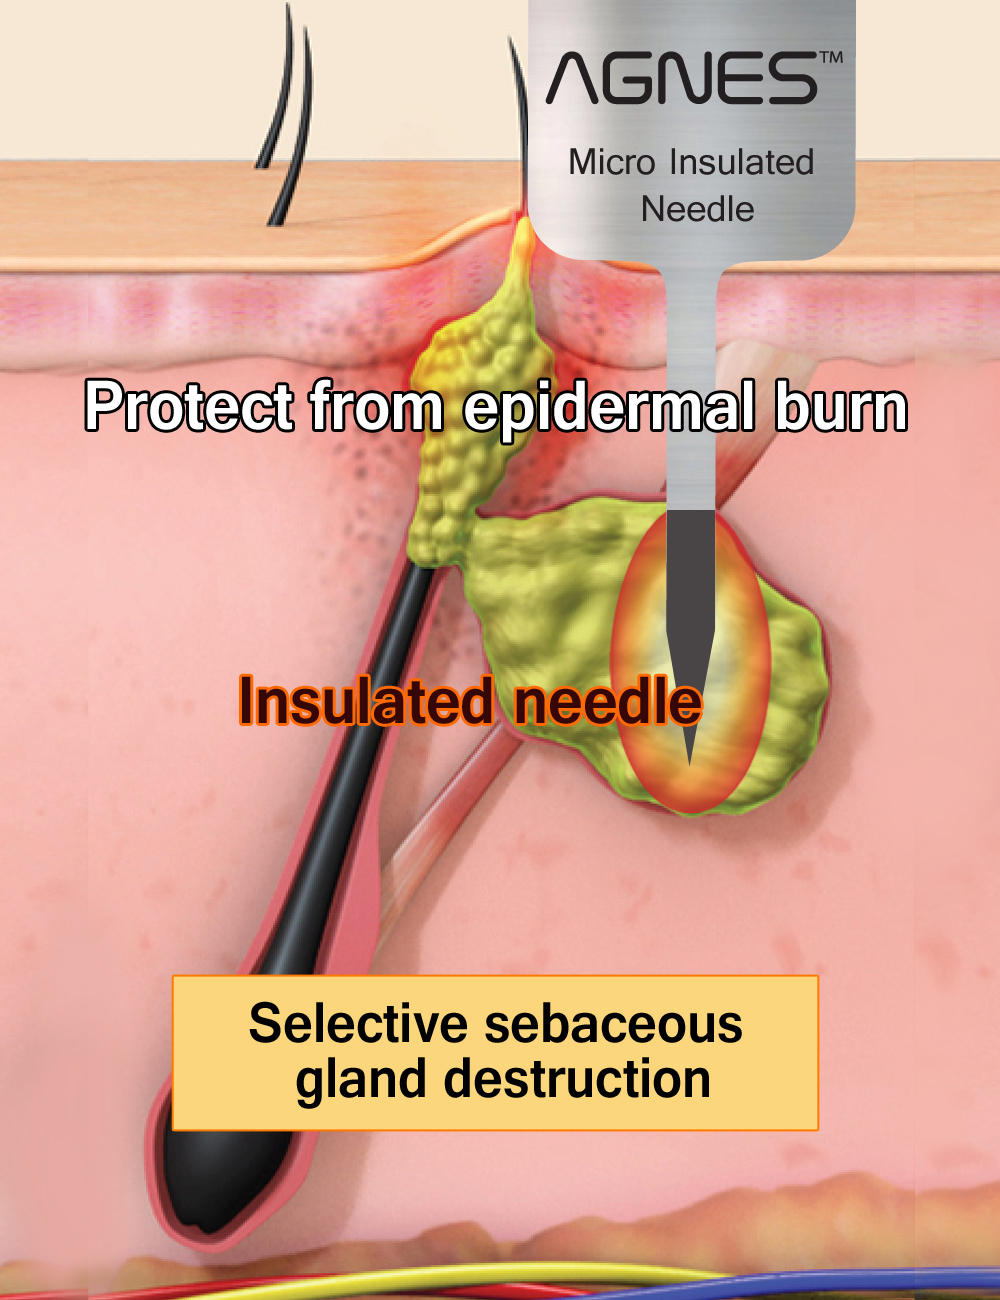 Selective sebaceous gland destruction